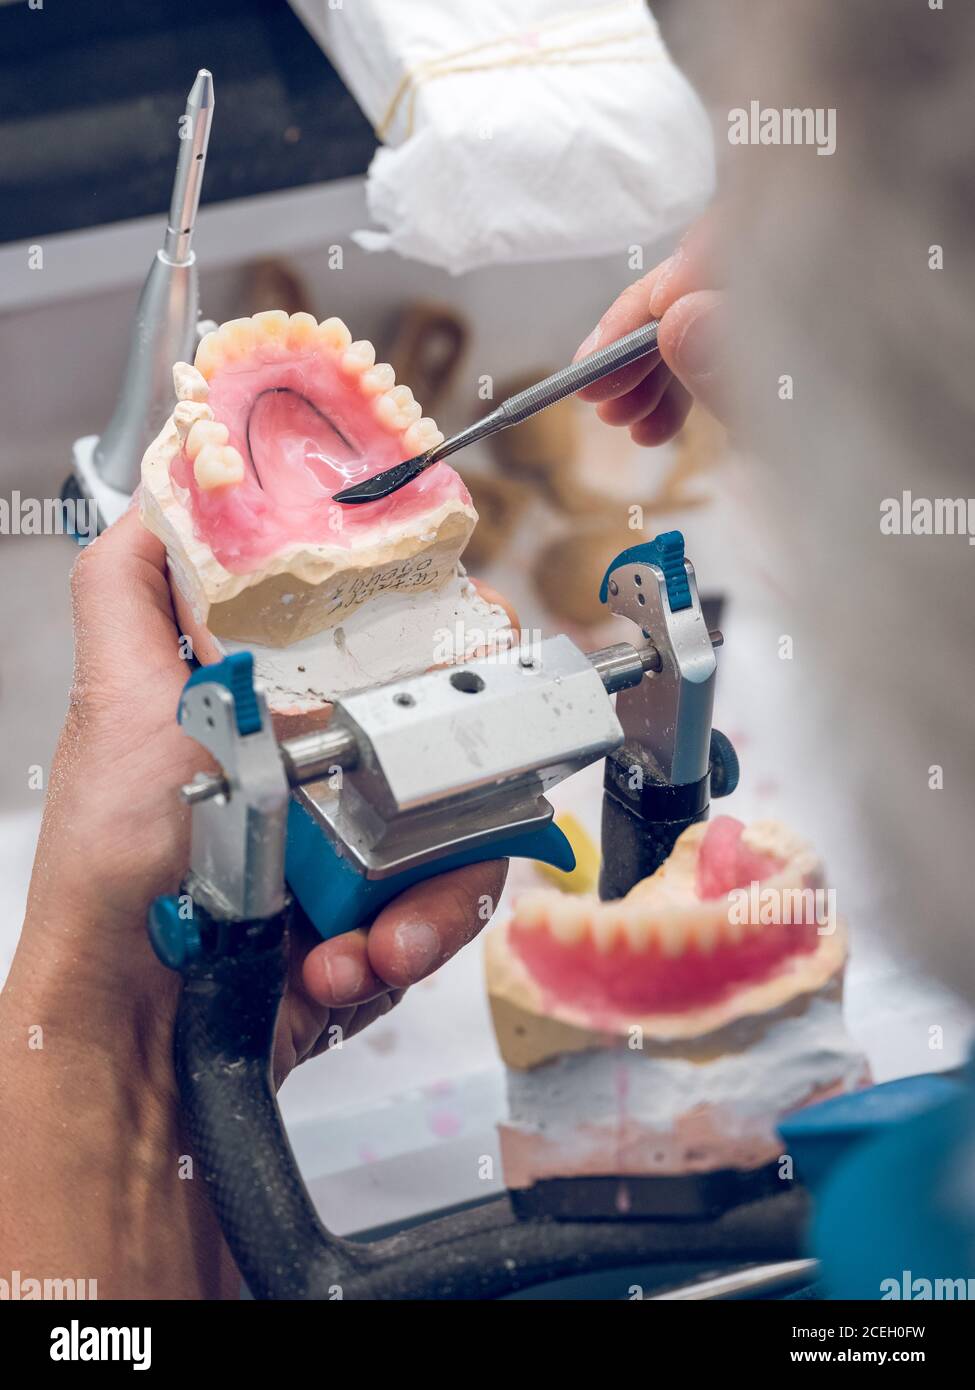 Crop Zahntechniker mit Werkzeug, um flüssiges Material auf Zahnfleisch der  Prothese während der Arbeit im Labor gelten Stockfotografie - Alamy